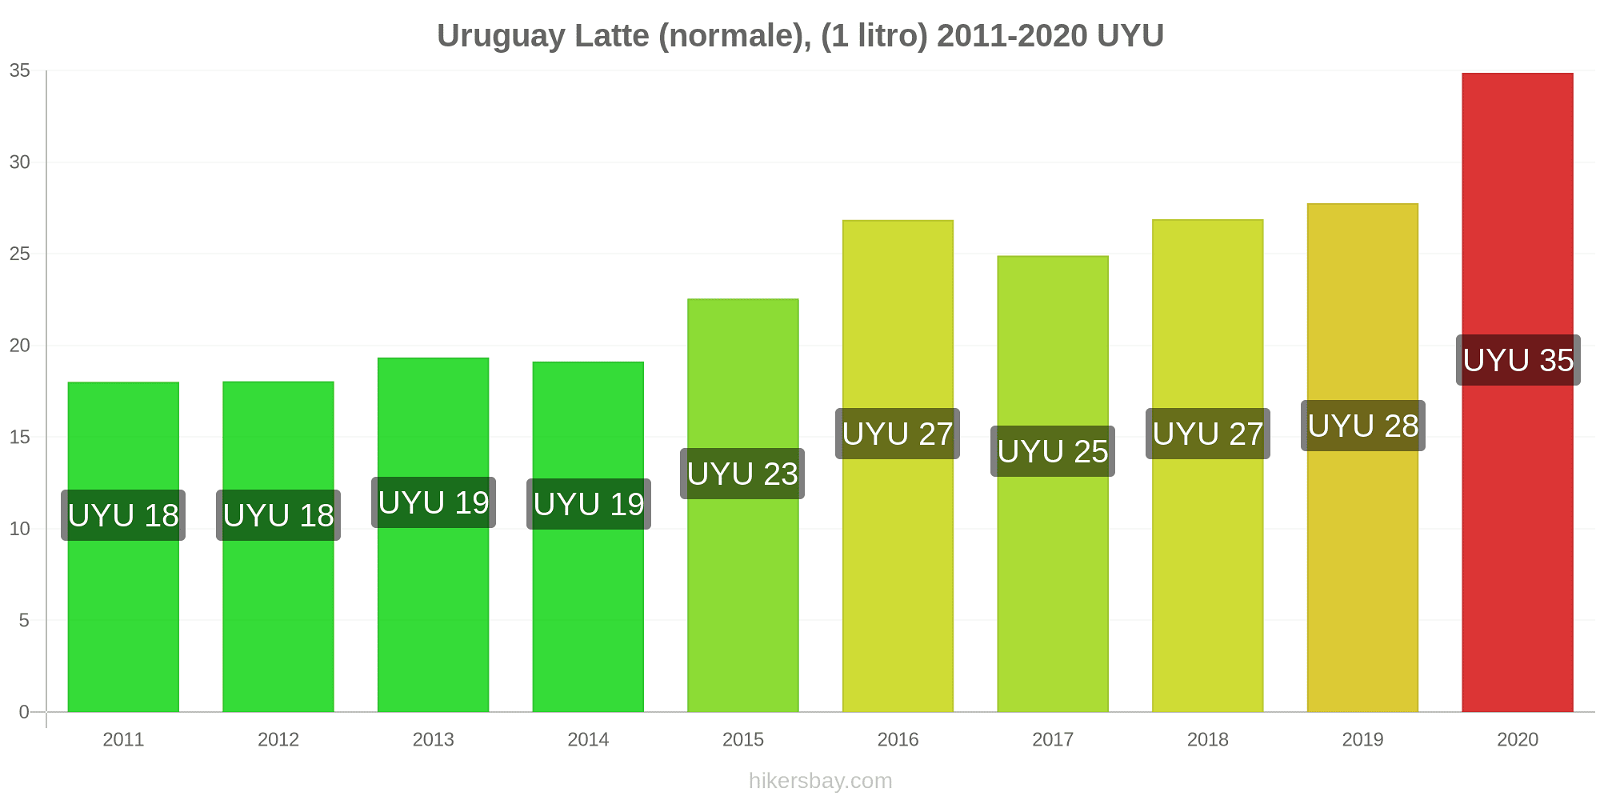 Uruguay variazioni di prezzo Latte (1 litro) hikersbay.com